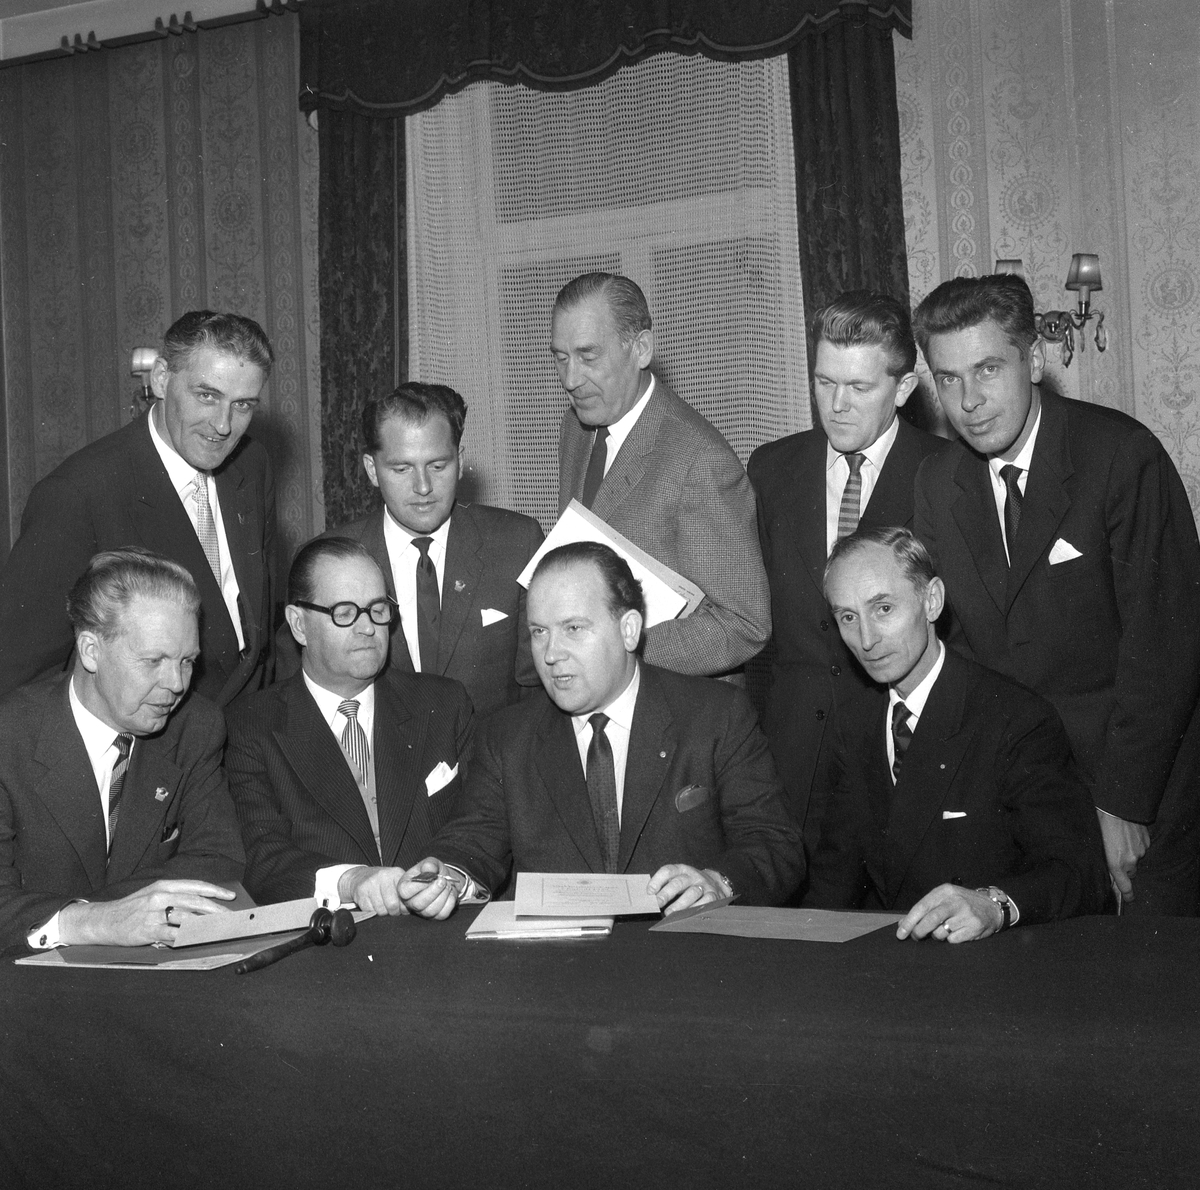 Örebros VM-kommitté.
21 oktober 1958.